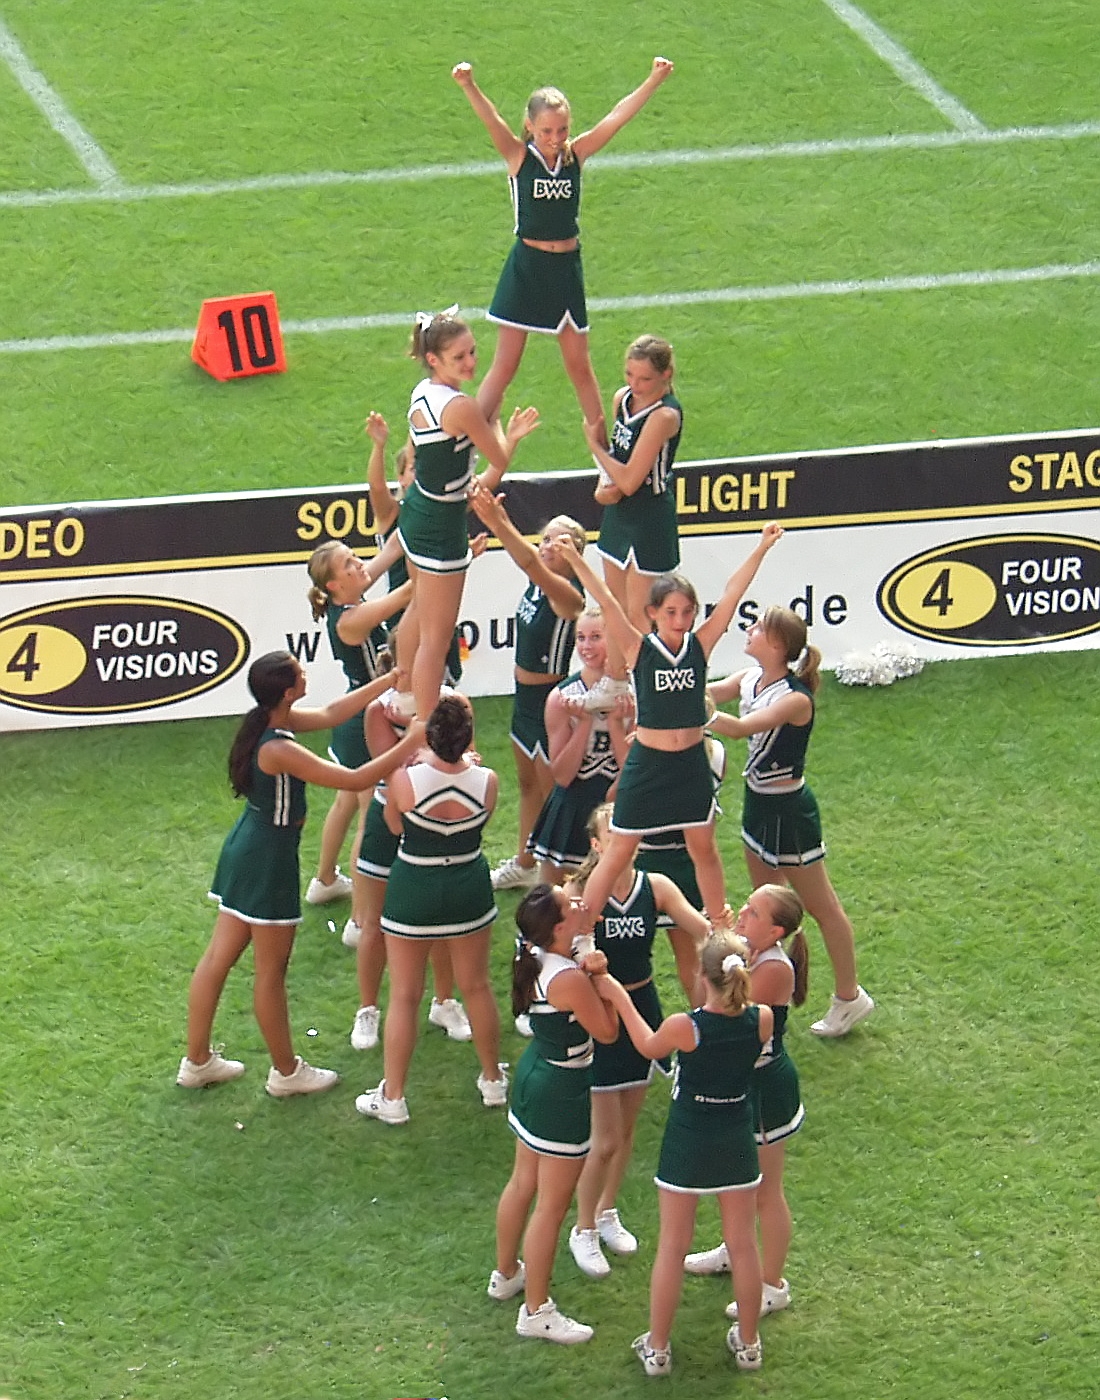 File:Cheerleaders - American Football - World Games Duisburg 2005 (2533).jpg